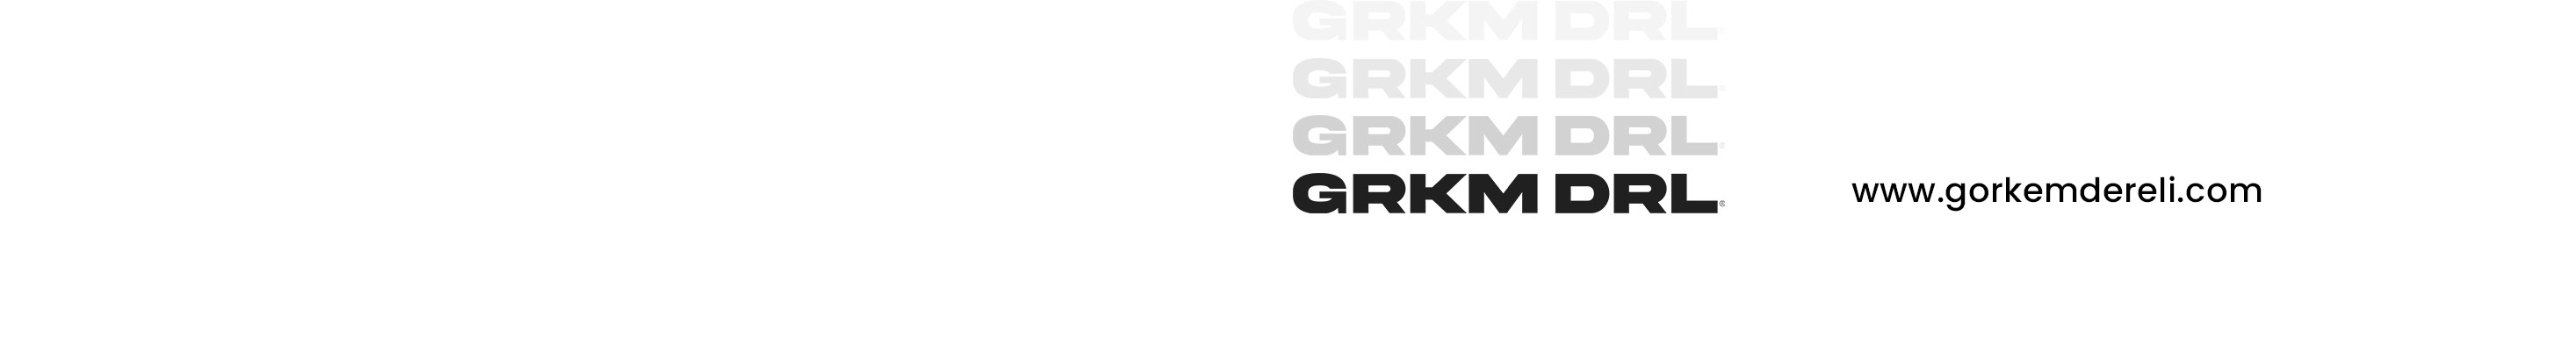 Görkem Dereli's profile banner